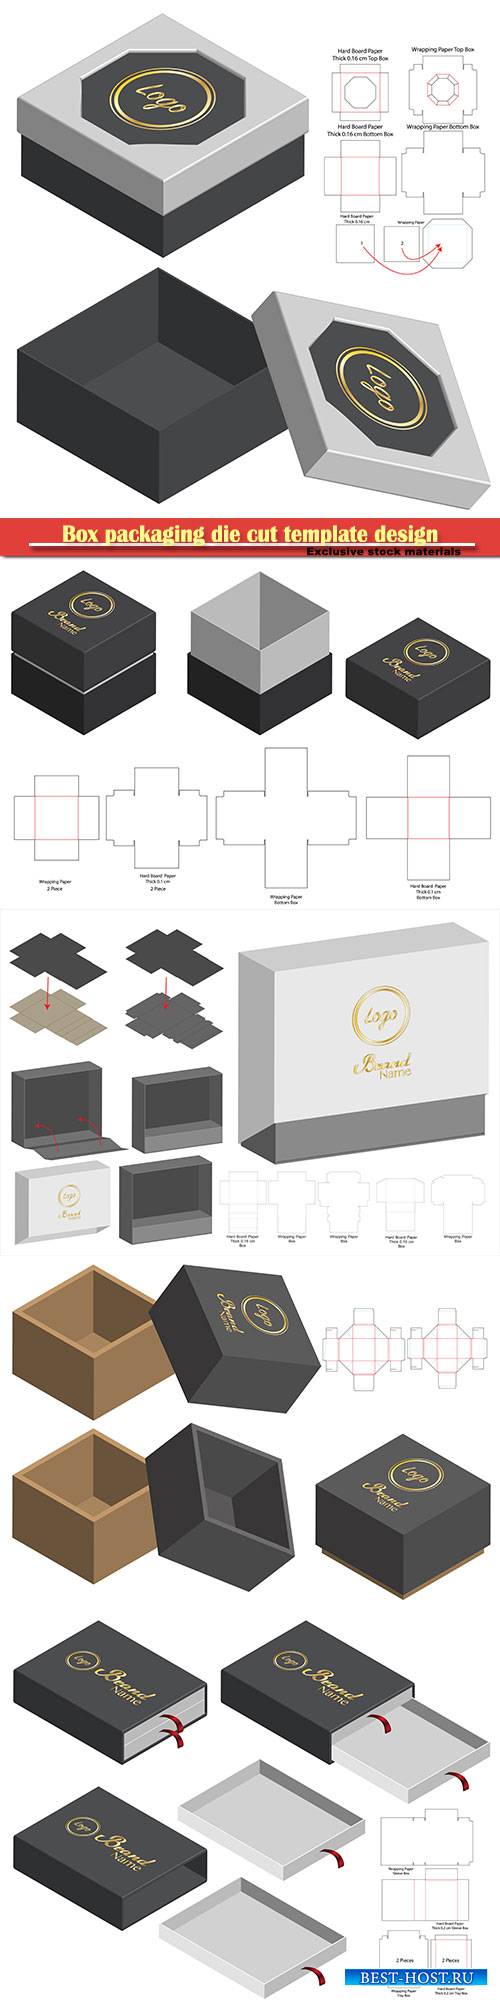 Box packaging die cut template design, 3d mock-up